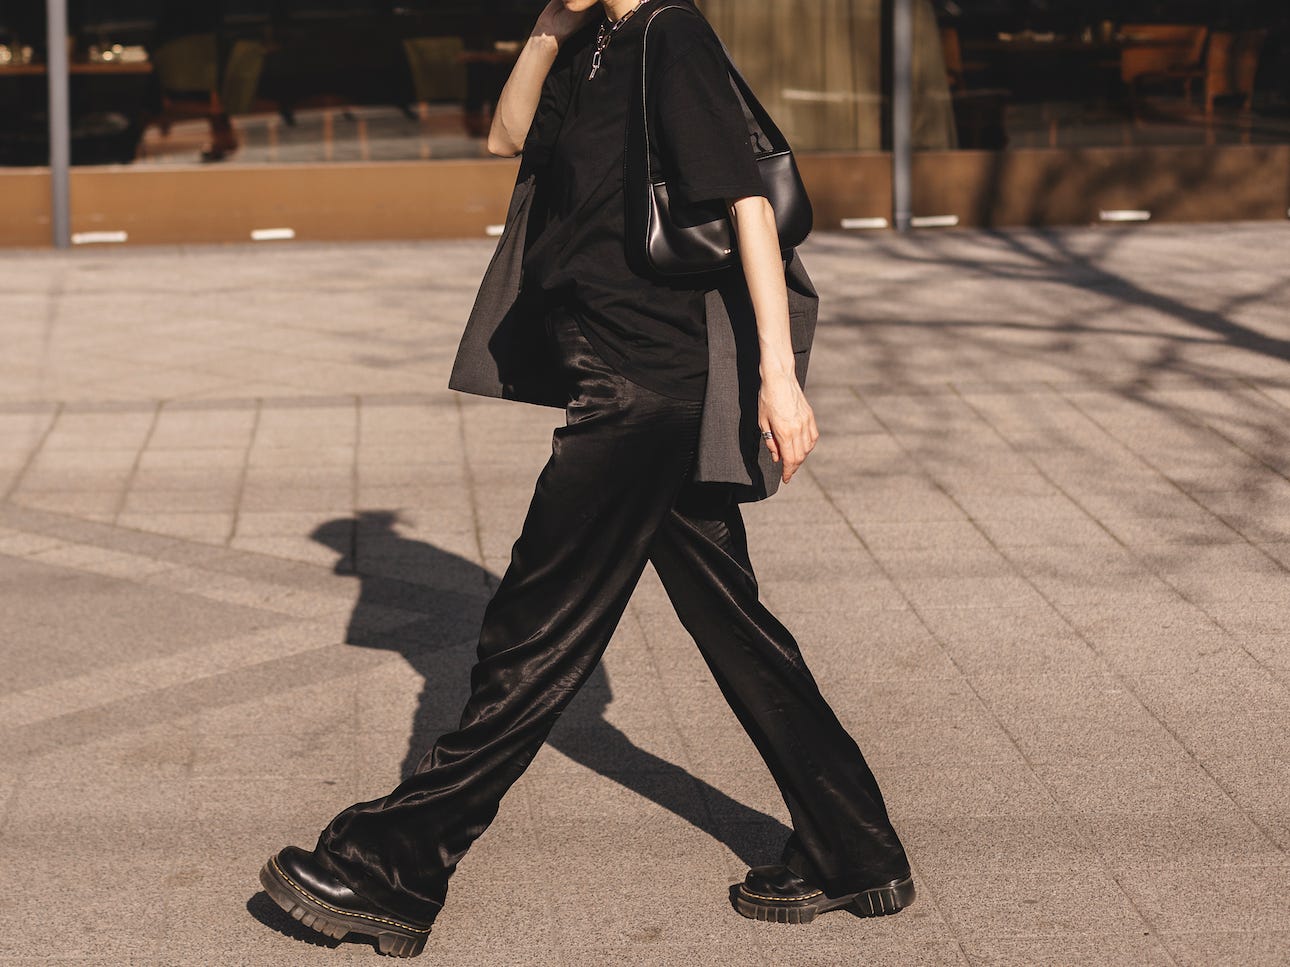 Frau geht die Straße entlang und trägt ein komplett schwarzes Outfit mit schwarzen Accessoires